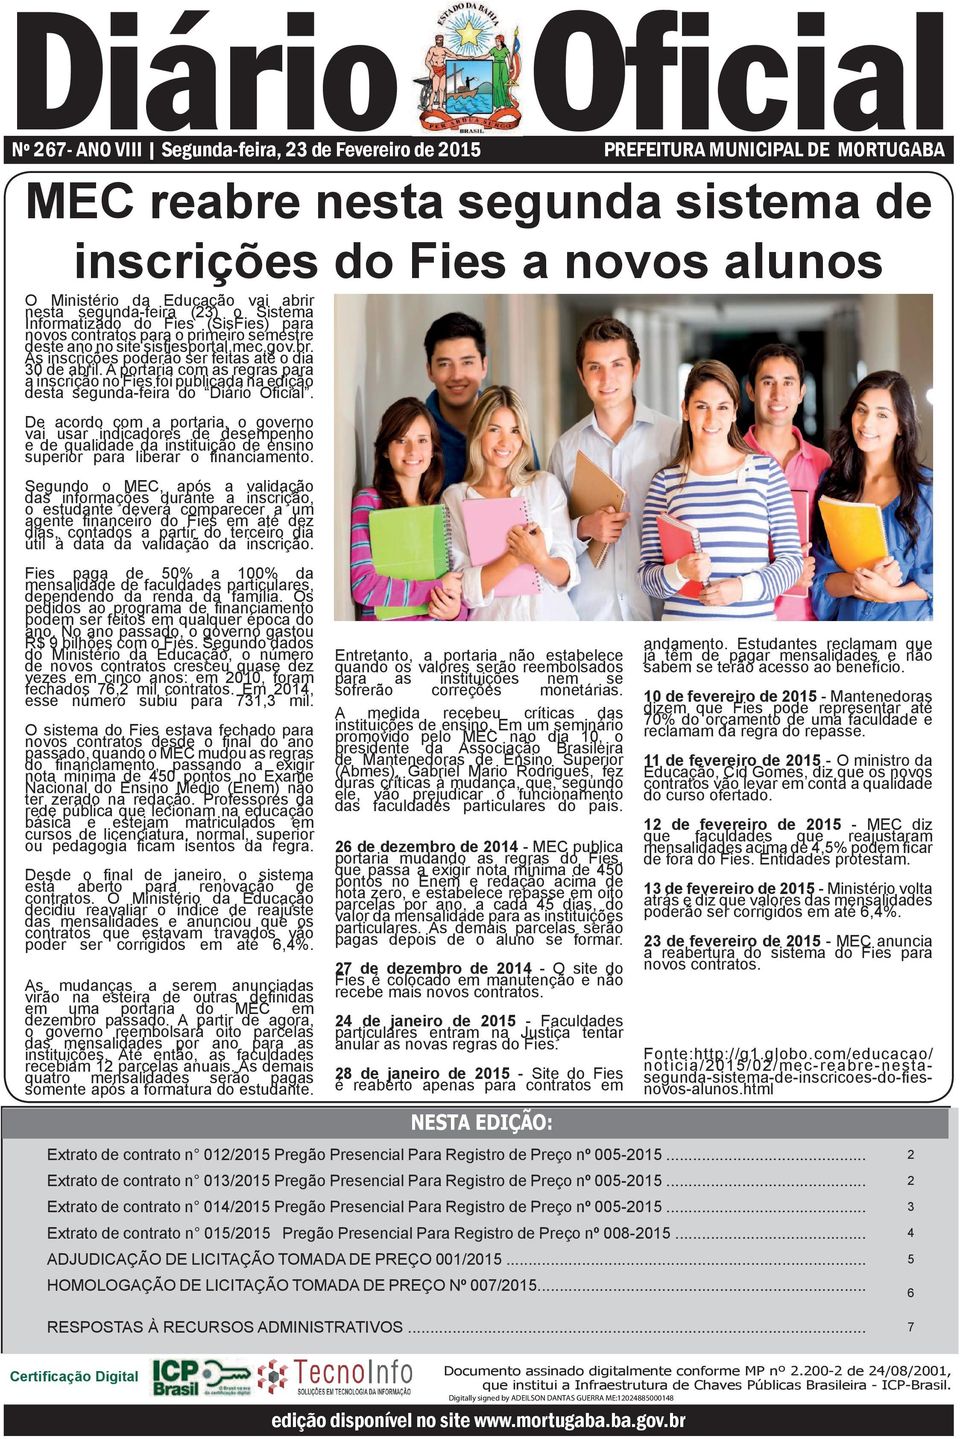 A portaria com as regras para a inscrição no Fies foi publicada na edição desta segunda-feira do Diário Ofi cial.